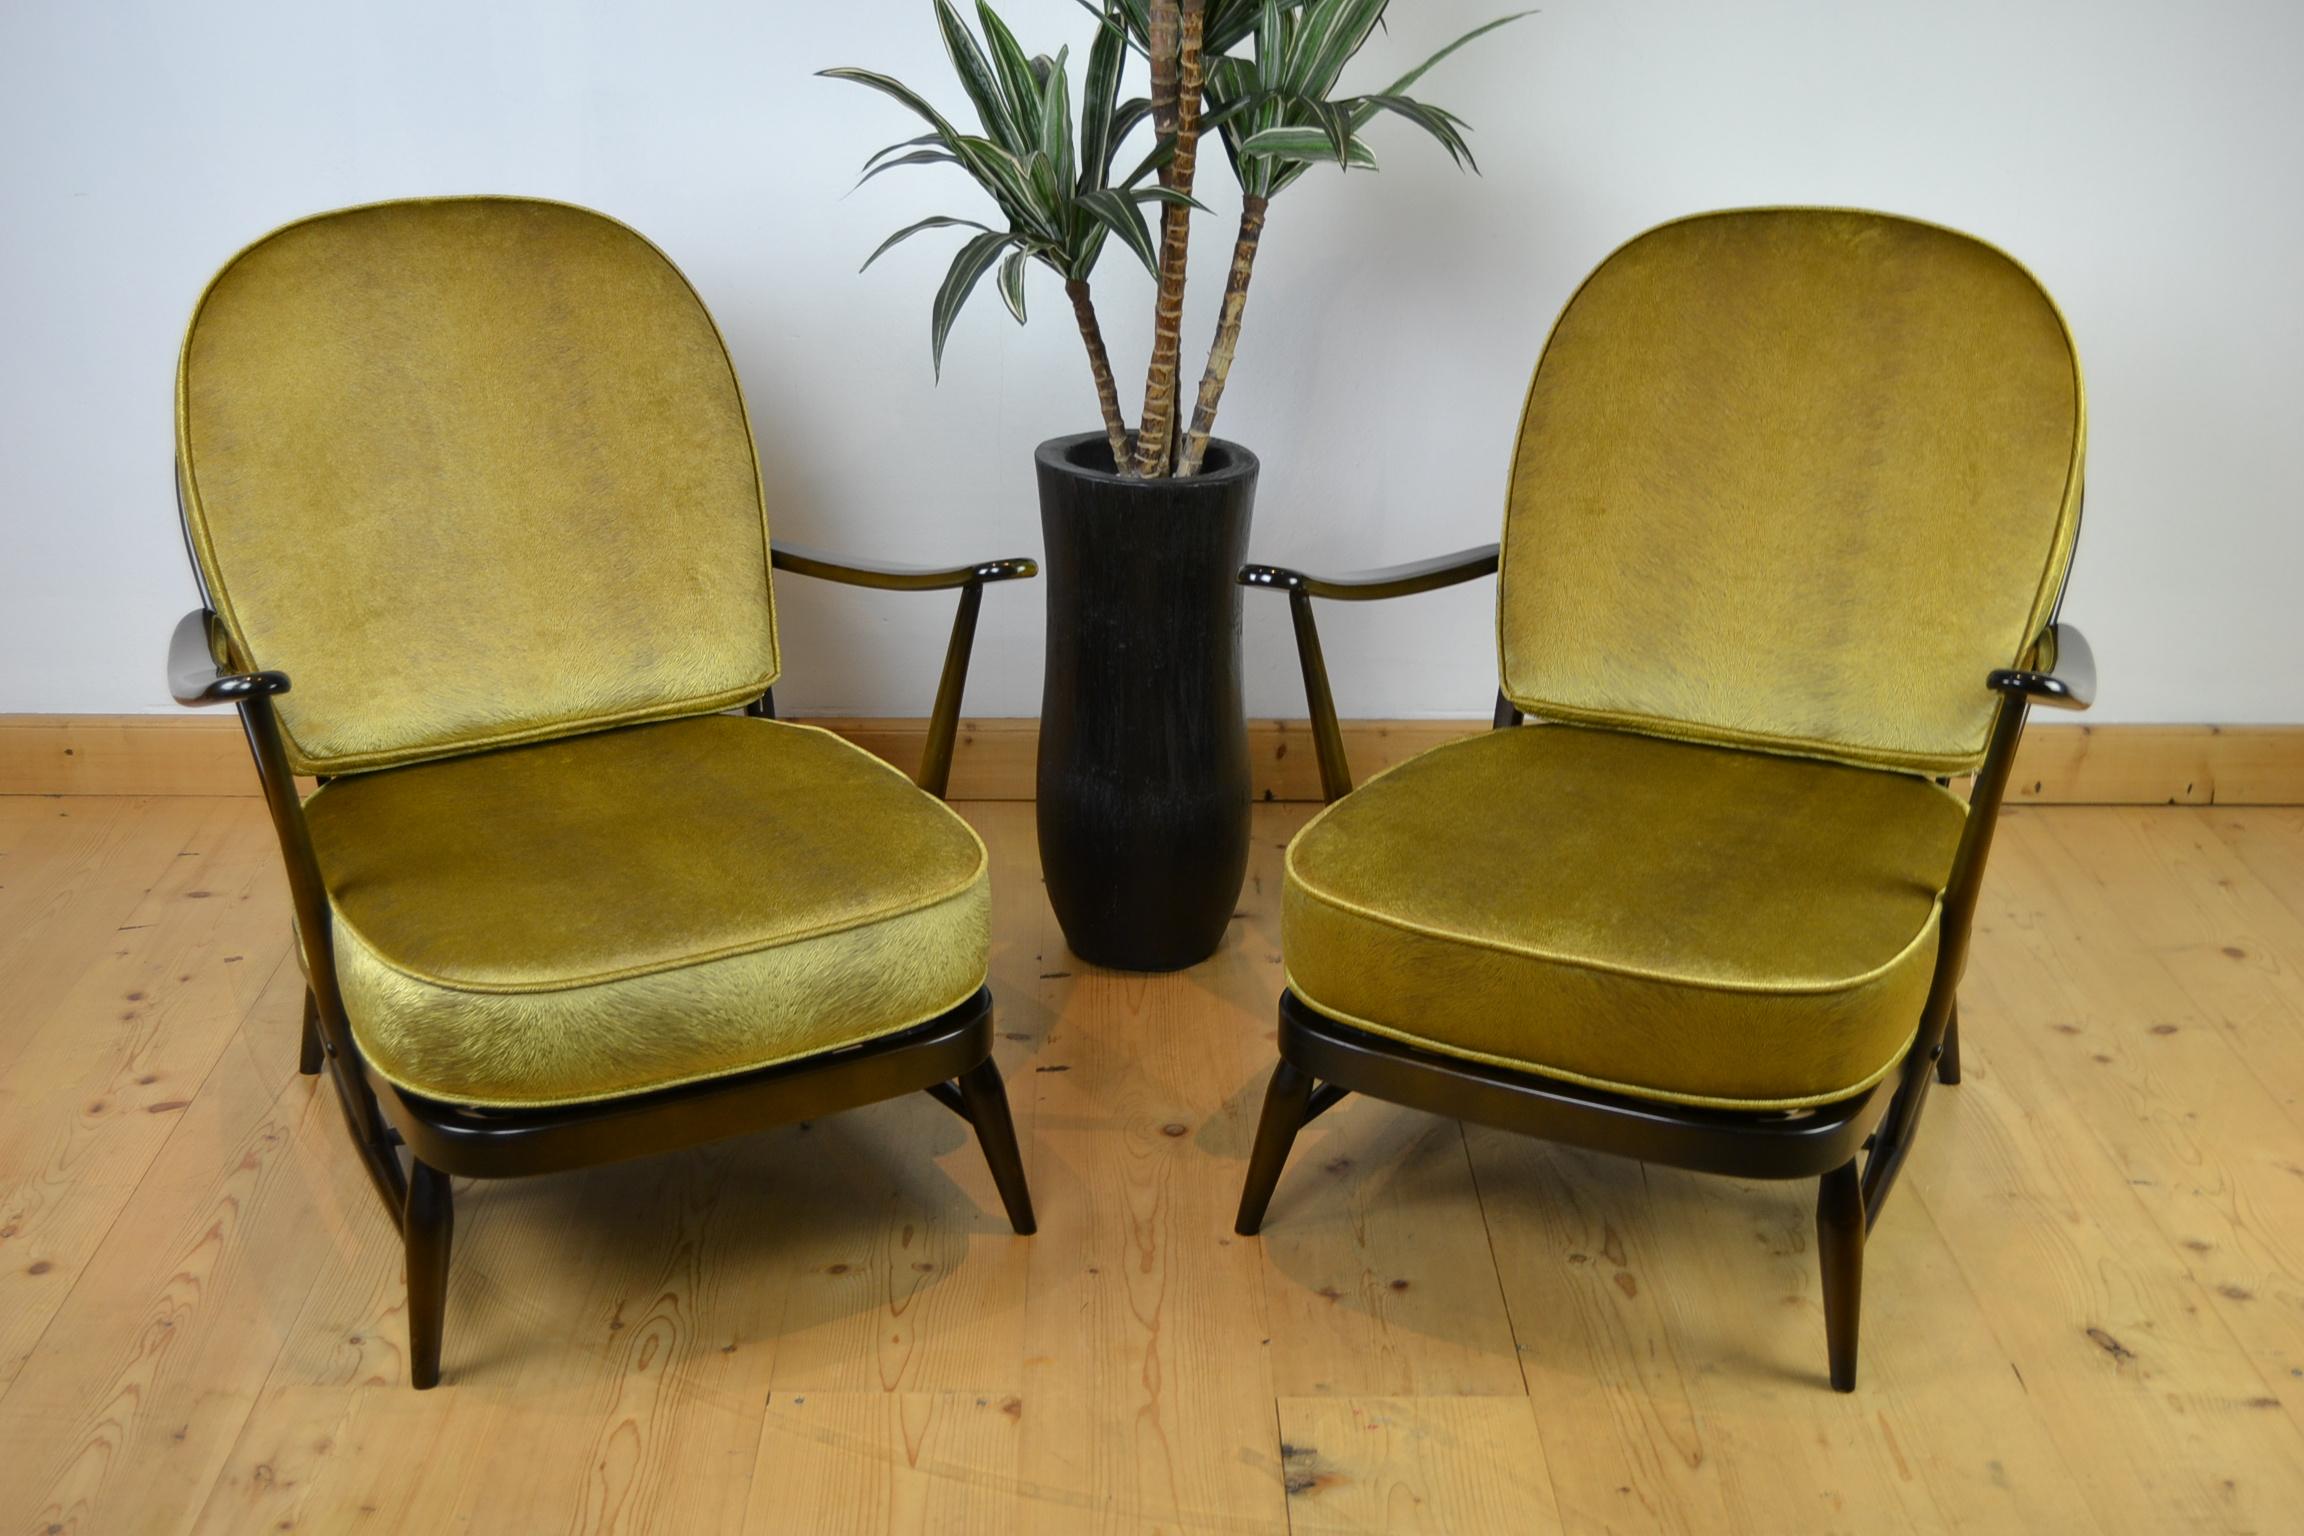 1970er Sessel der Serie Windsor von Ercol.
Diese Vintage-Sessel mit runder Rückenlehne sind aus dunkler, massiver Ulme gefertigt. 
Beide haben noch ihr Etikett unter dem Sitz und sind auf 1979 datiert. 

Sie haben neue Kissen bekommen, die von